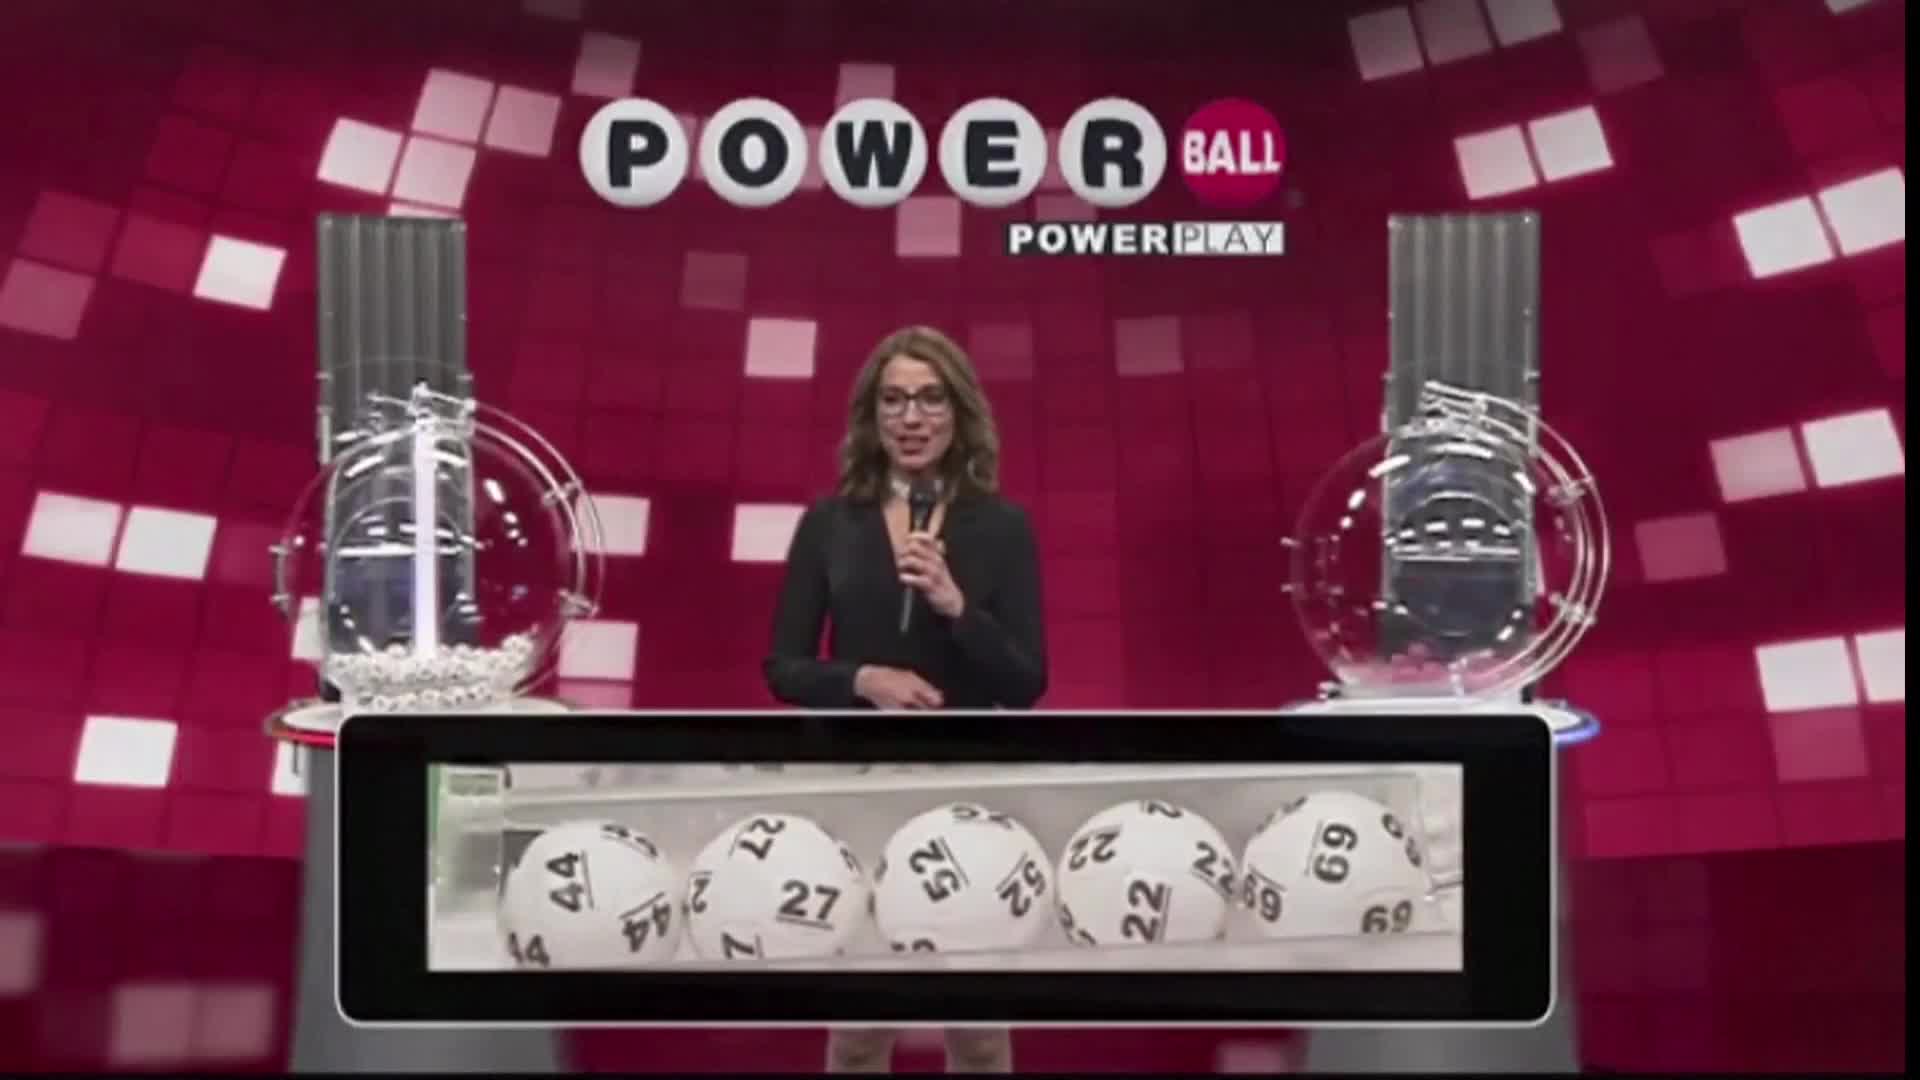 Късметлия спечели джакпота от 1,3 млрд. долара в лотарията "Пауърбол" (ВИДЕО)